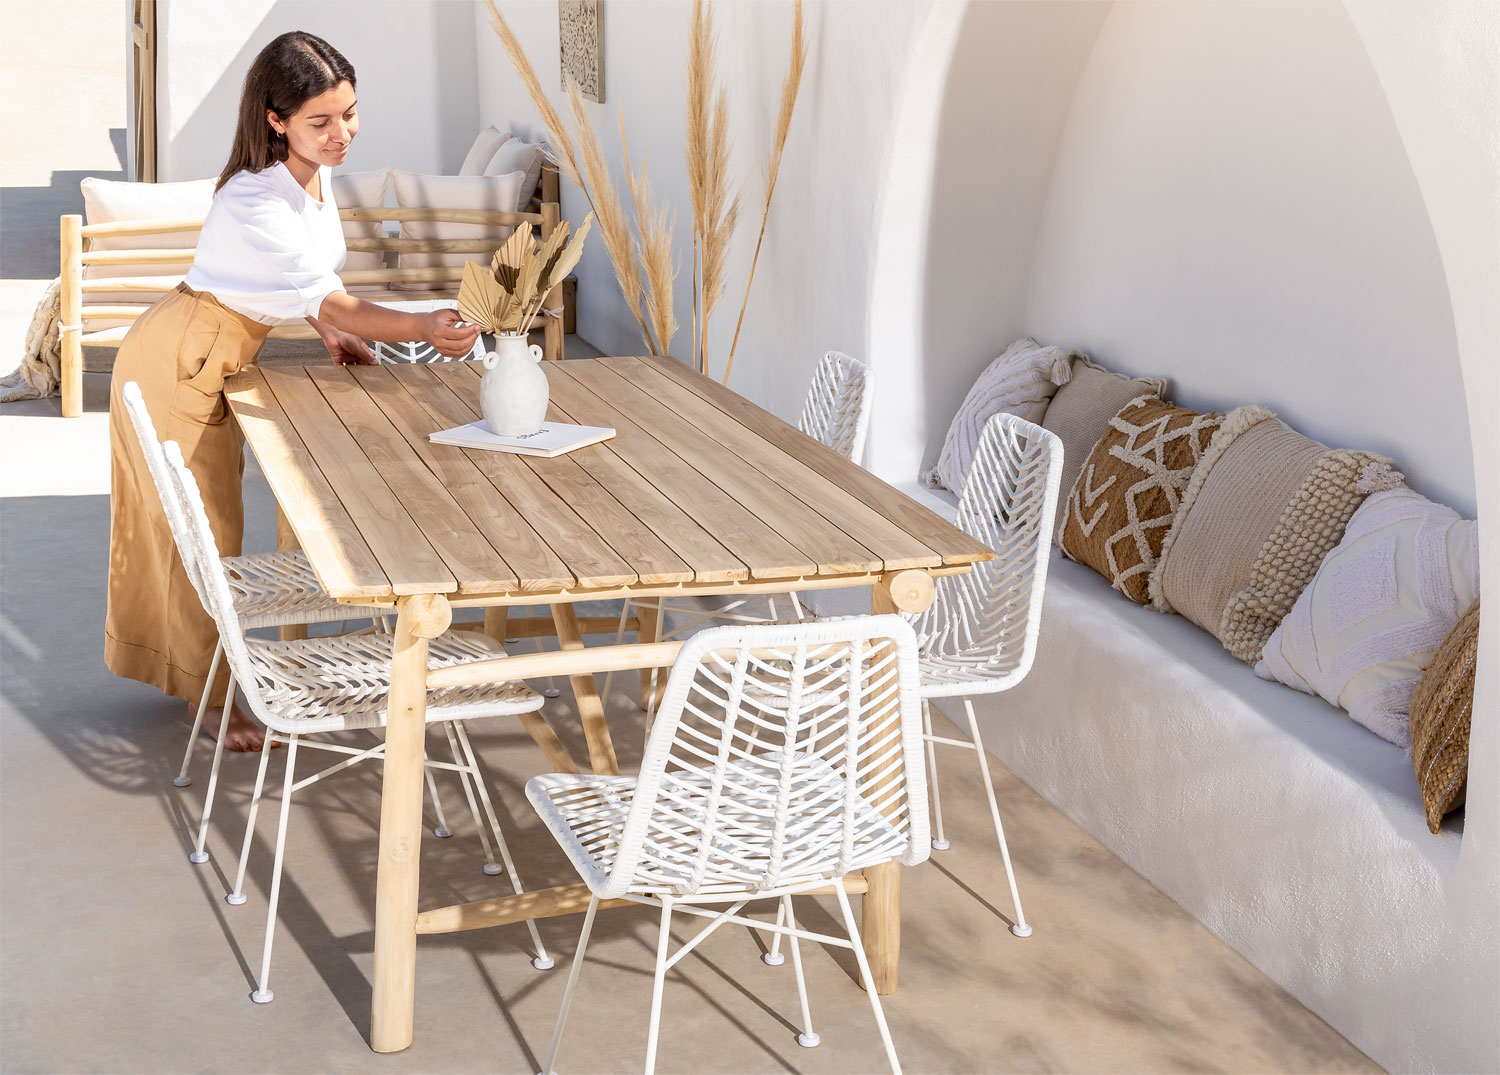 Mesa de comedor extensible modelo DINE - Maison de Luxe